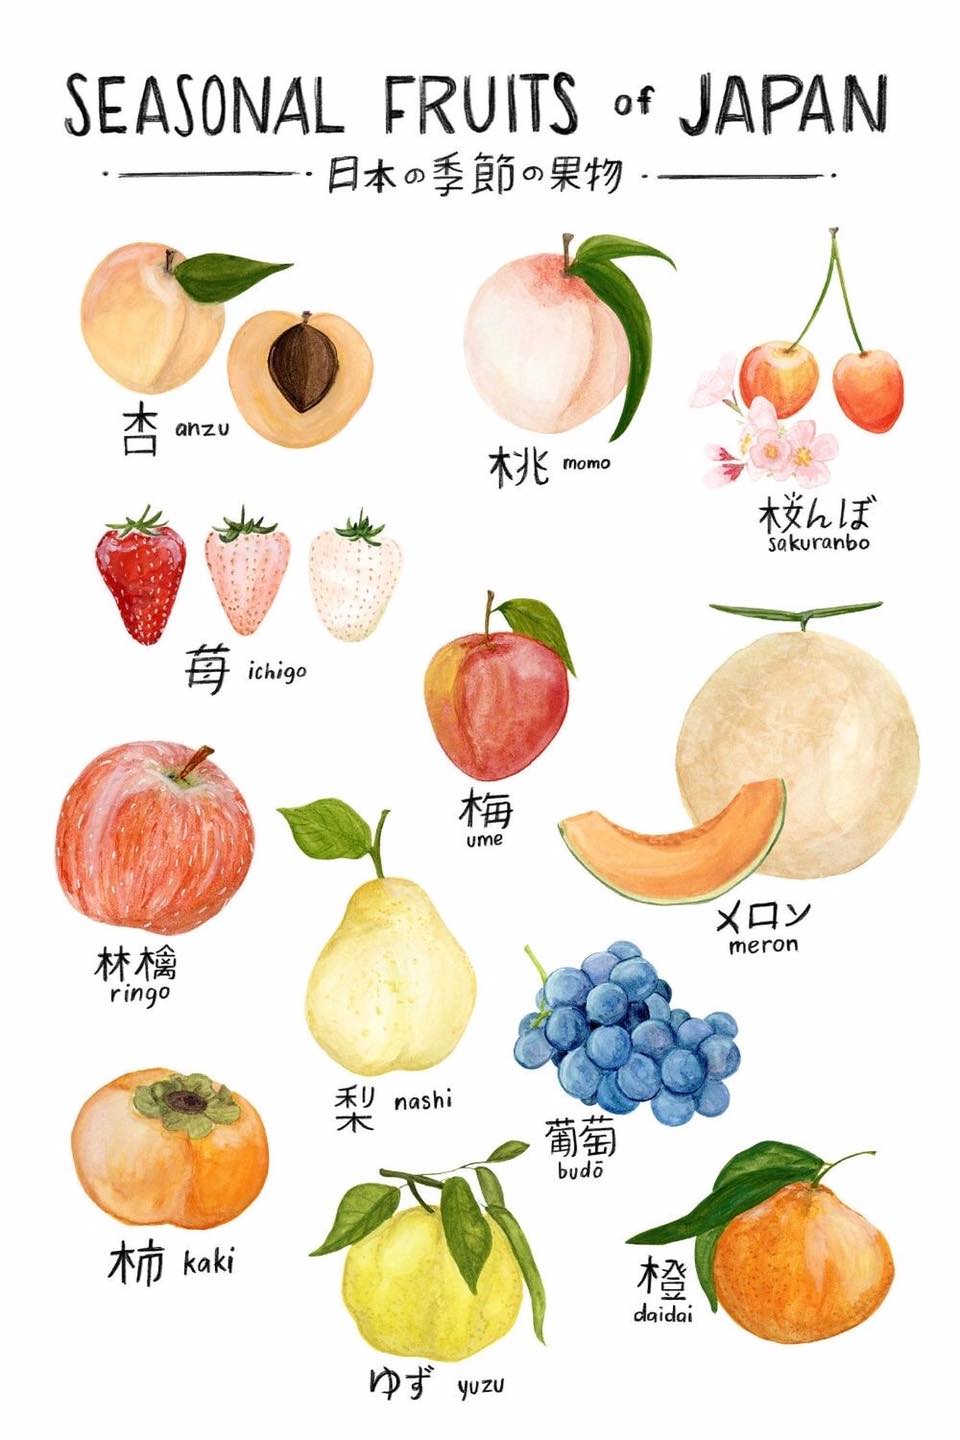 外国人 日本の季節の果物一覧をイラストにしてみたよー 海外の万国反応記 海外の反応